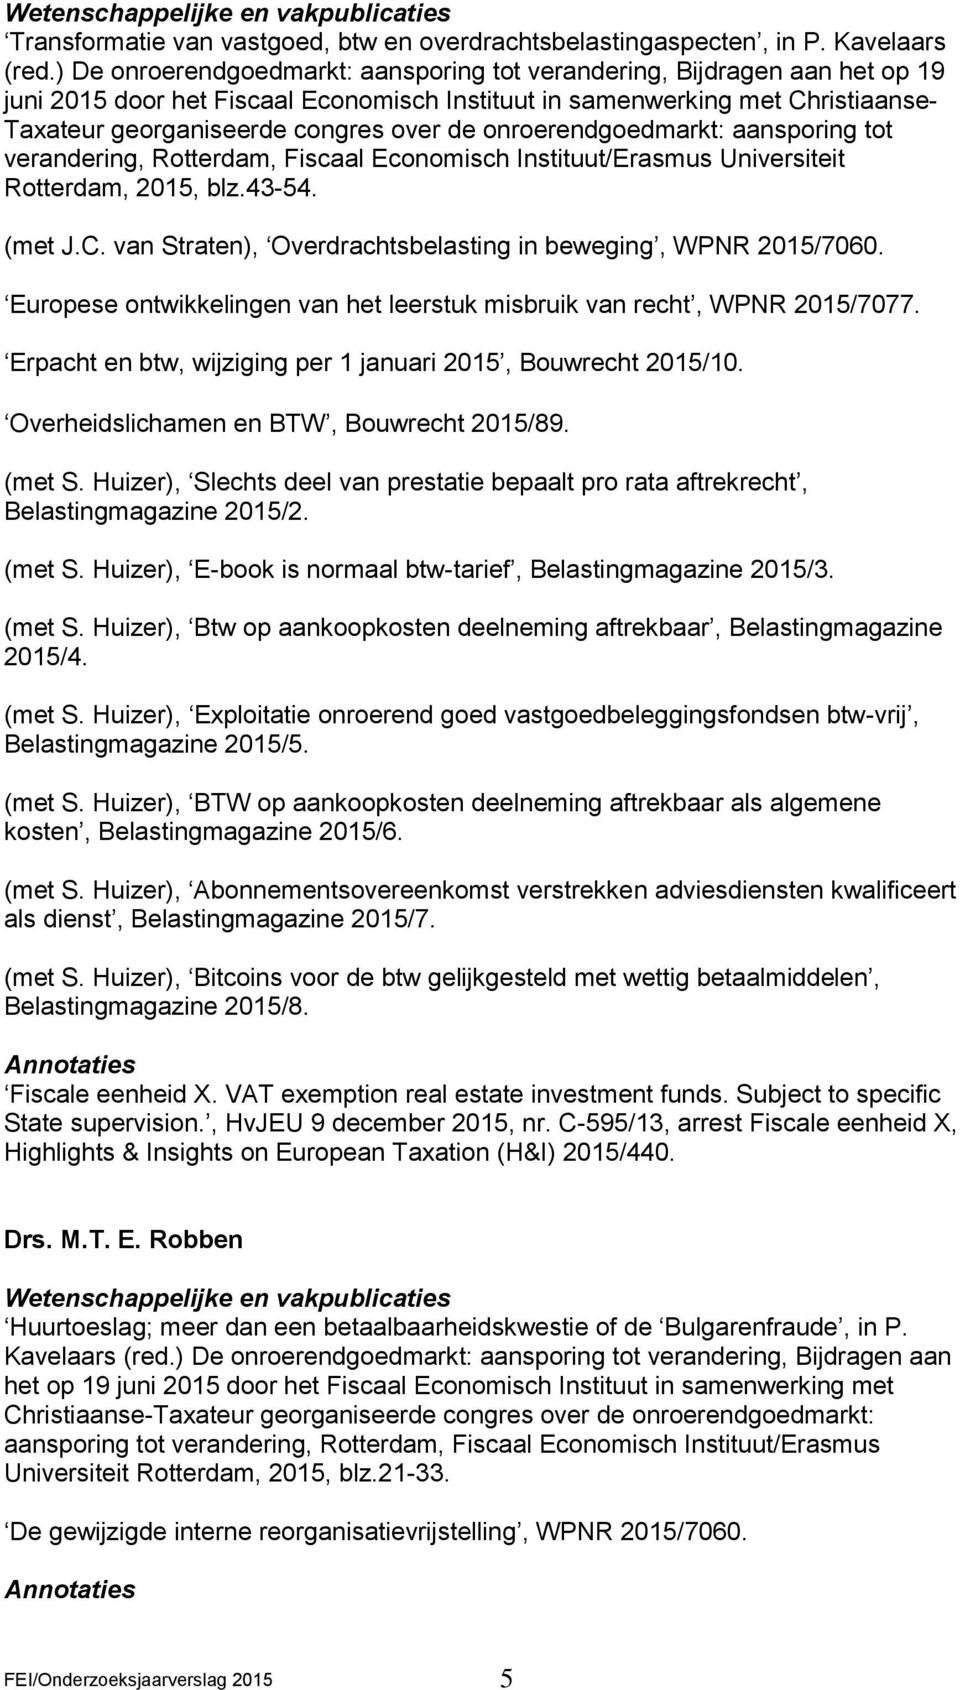 onroerendgoedmarkt: aansporing tot verandering, Rotterdam, Fiscaal Economisch Instituut/Erasmus Universiteit Rotterdam, 2015, blz.43-54. (met J.C.